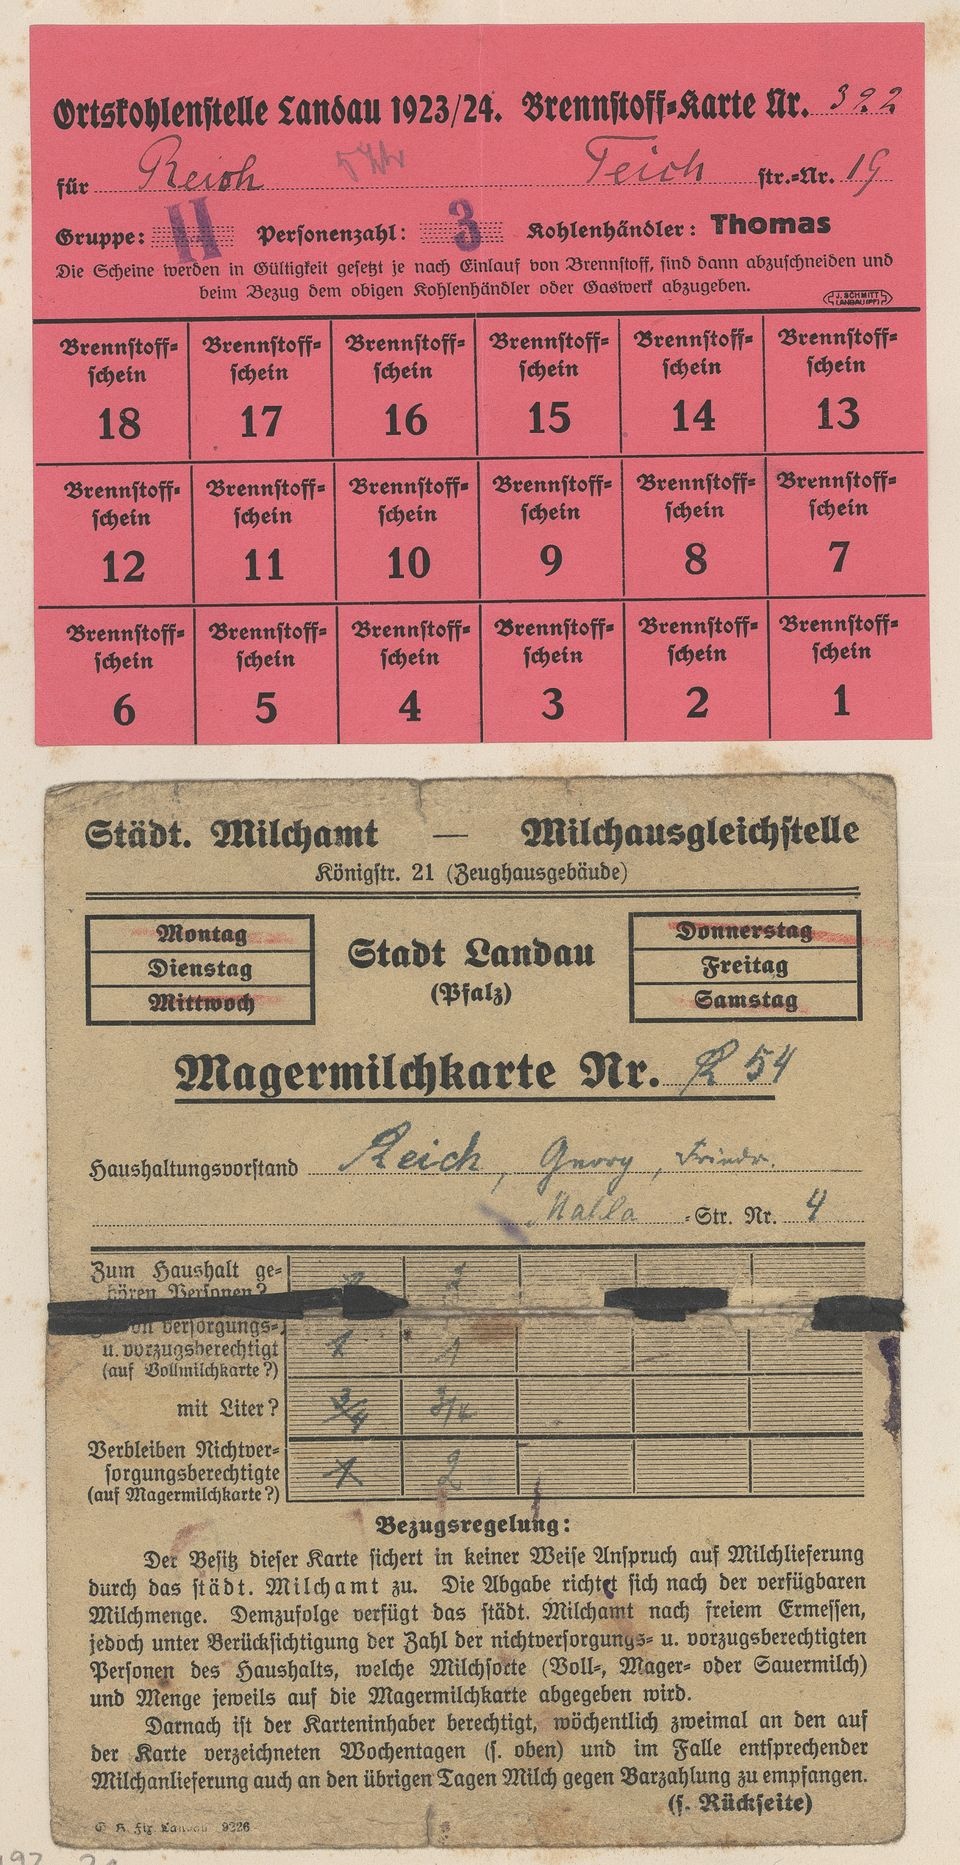 Brennstoffscheine und Magermilchtarte (Historisches Museum der Pfalz, Speyer CC BY)